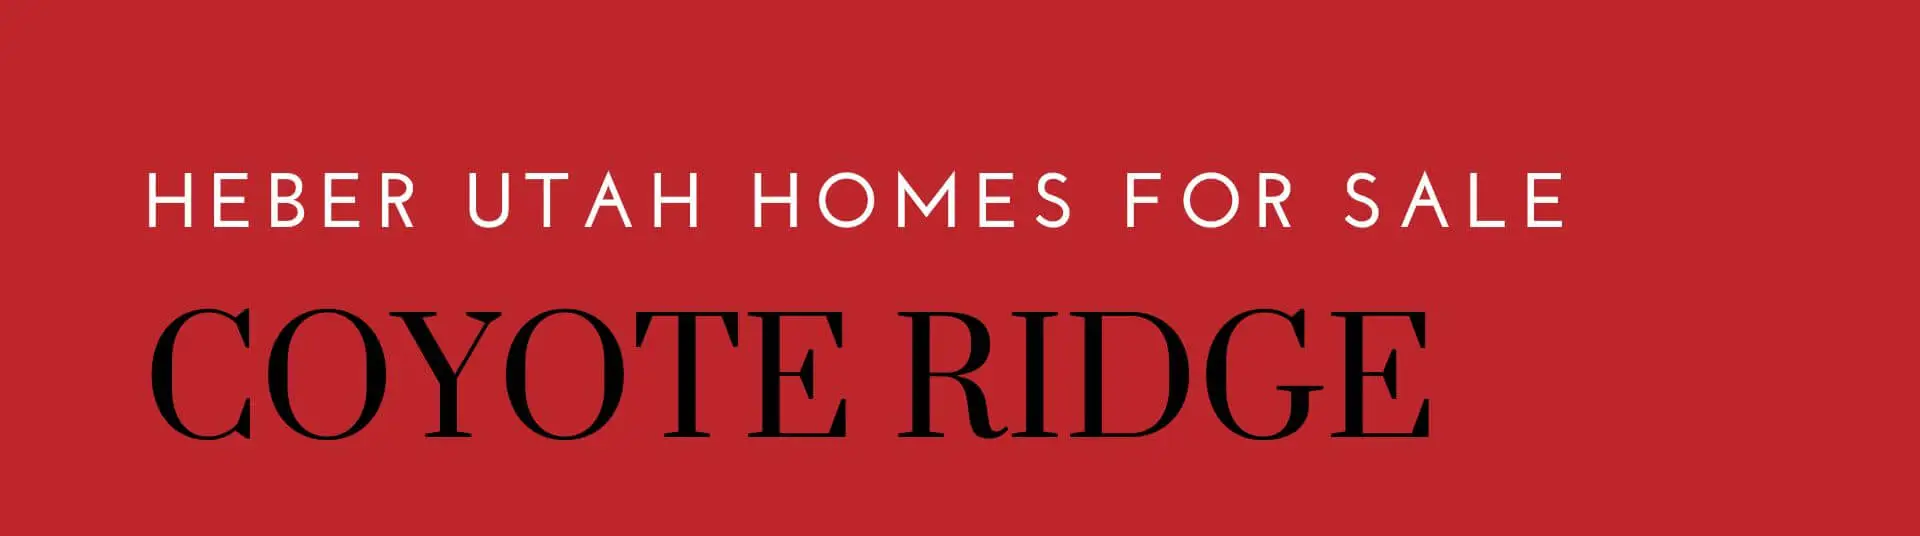 Coyote Ridge Homes for Sale in Heber Utah